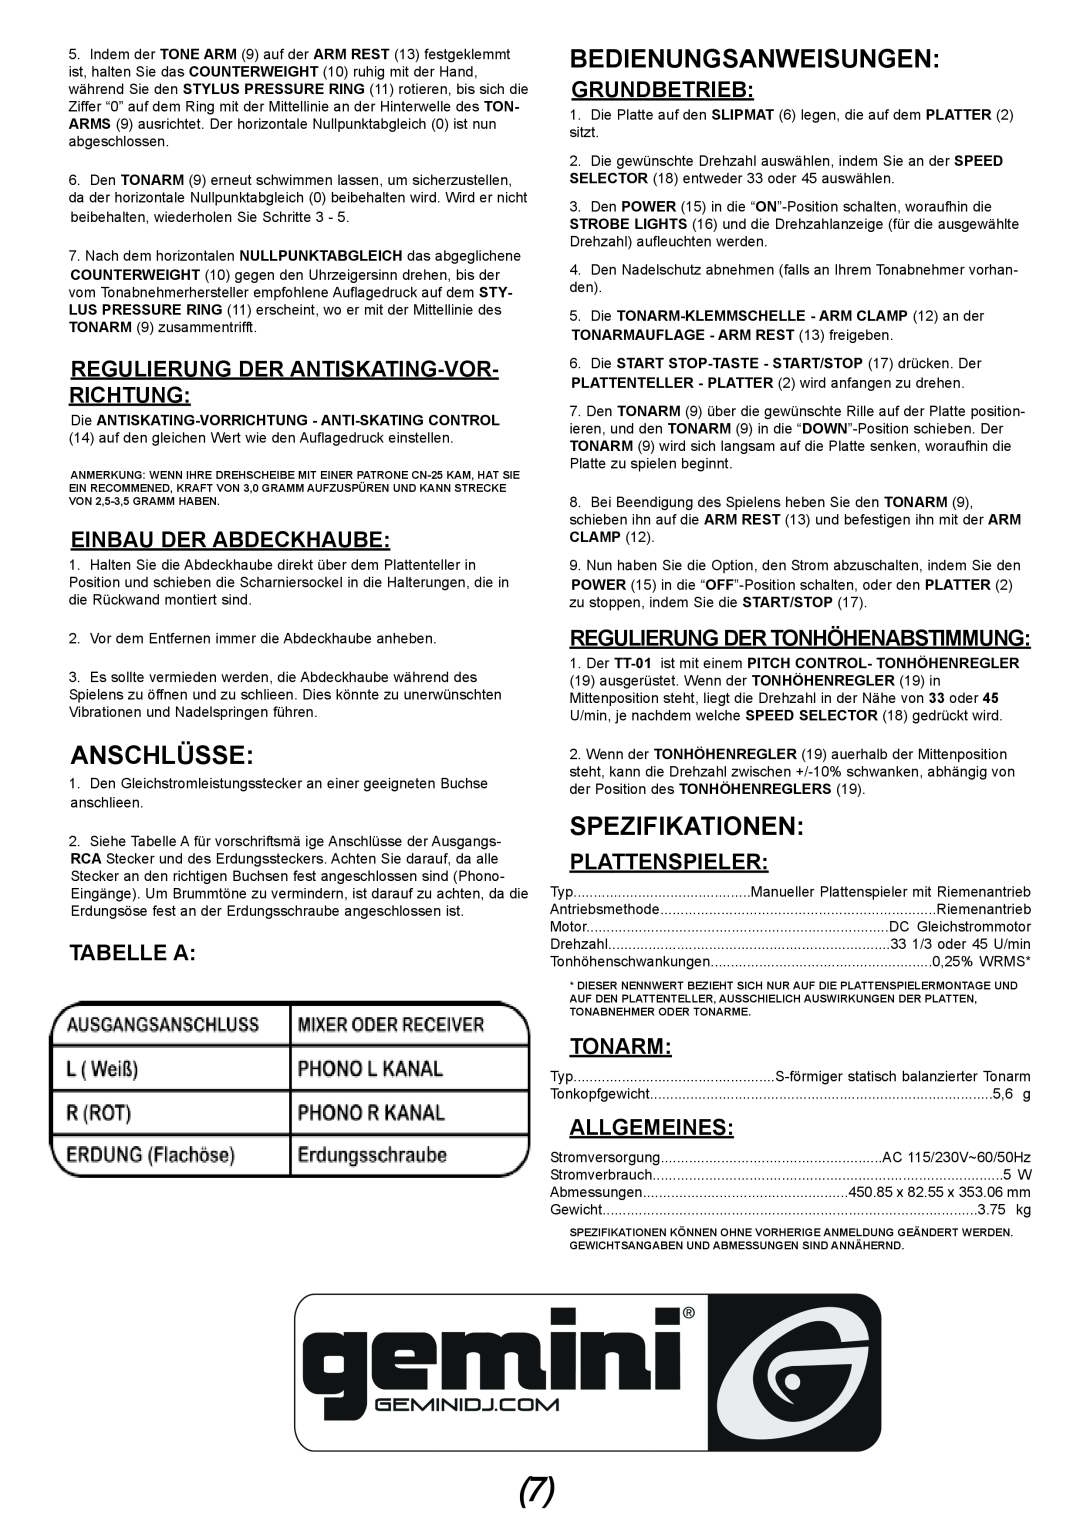 Gemini TT-01 manual Anschlüsse, Bedienungsanweisungen, Spezifikationen, Regulierung Der Antiskating-Vor-Richtung, Tabelle A 